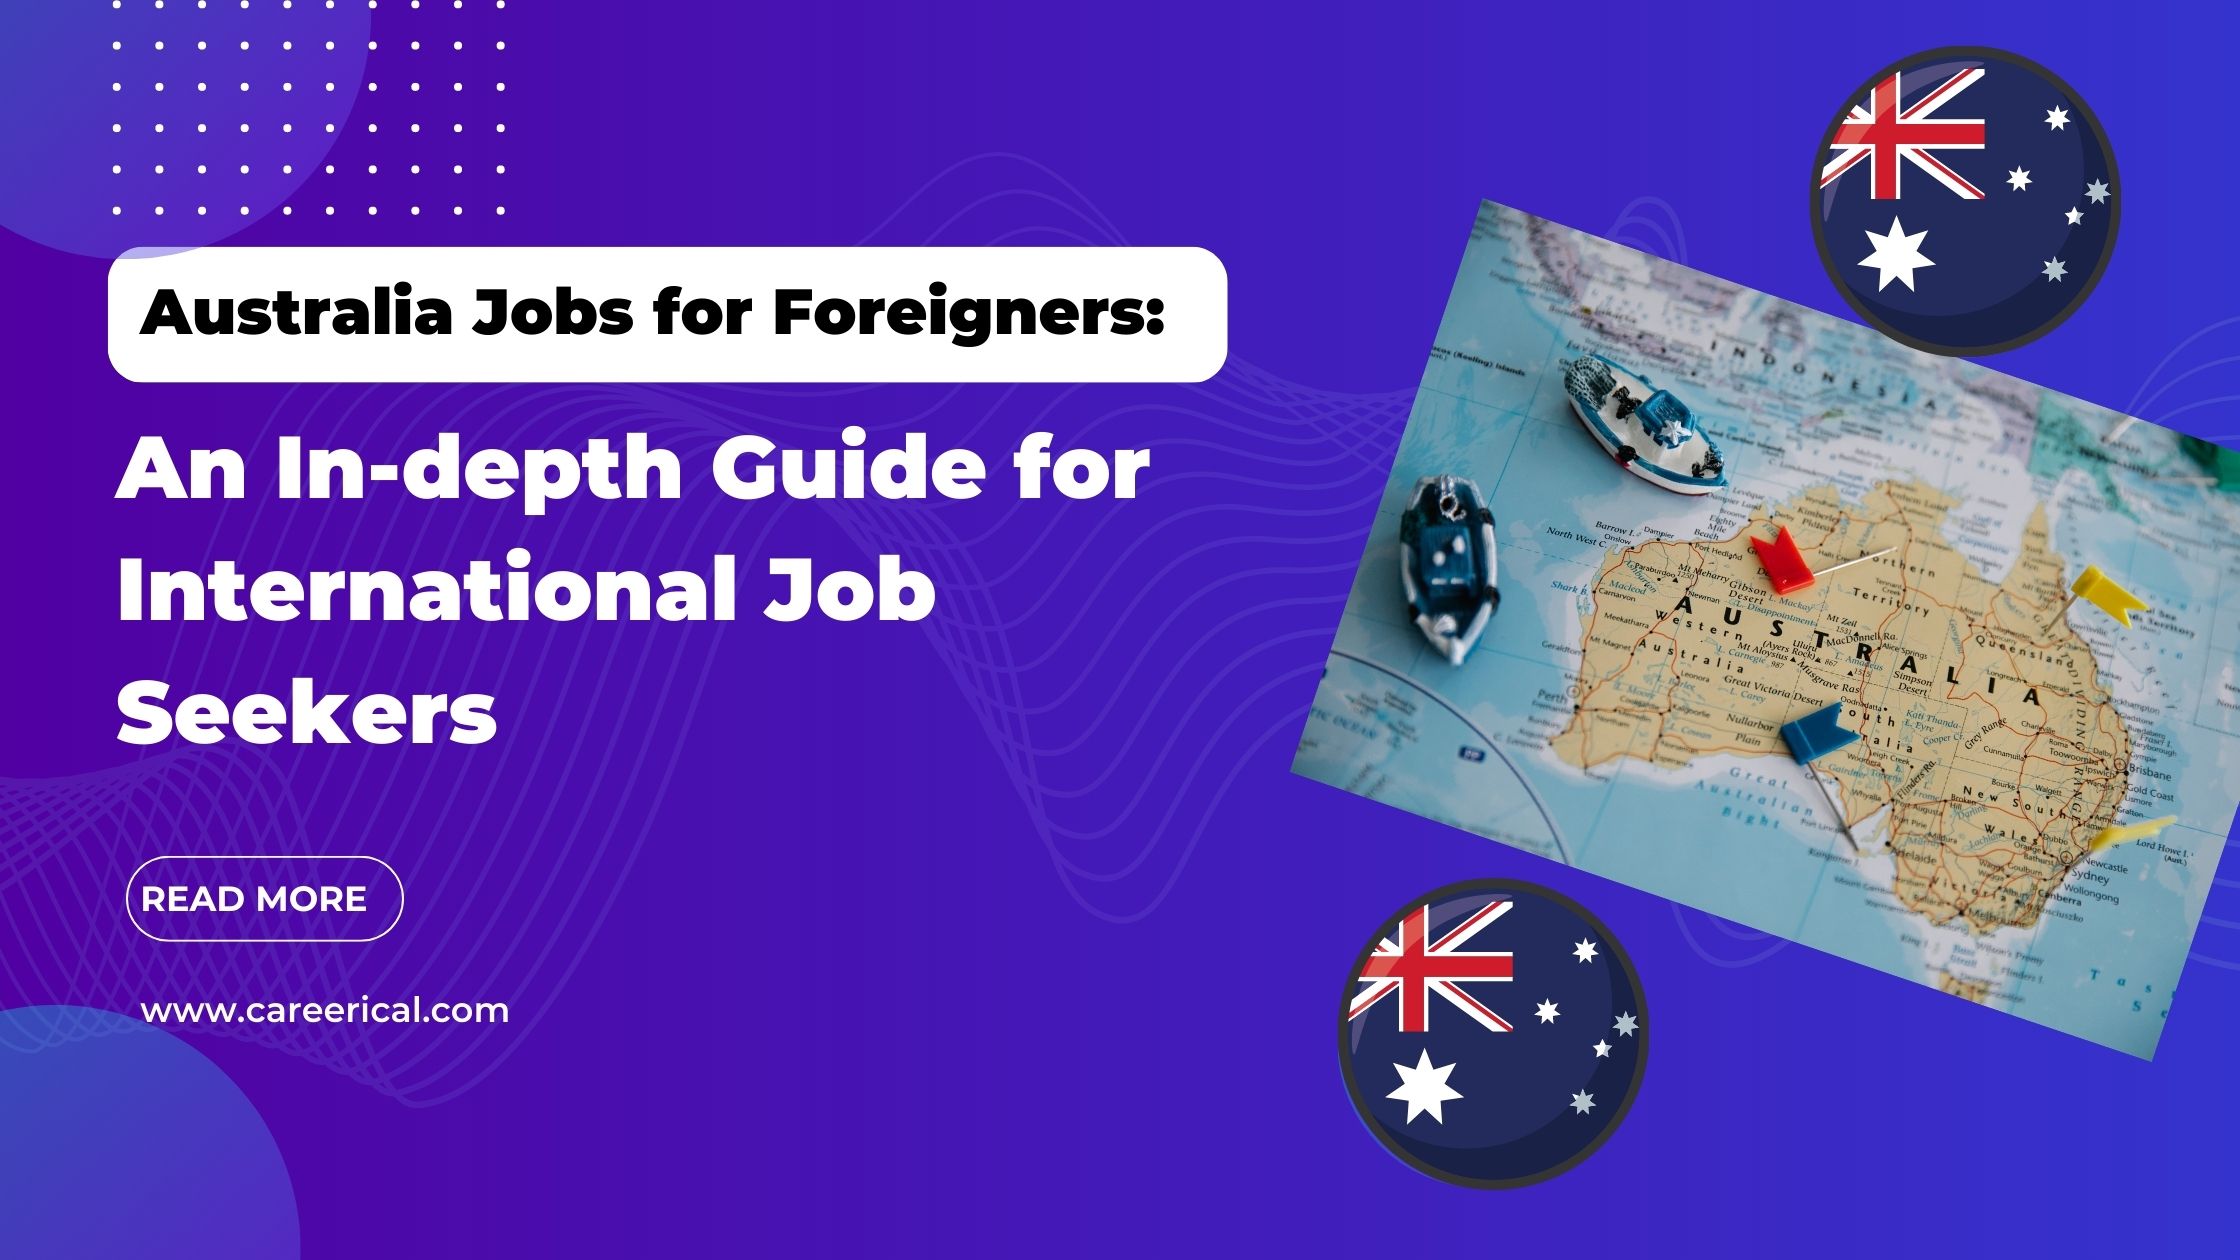 tourism research australia jobs